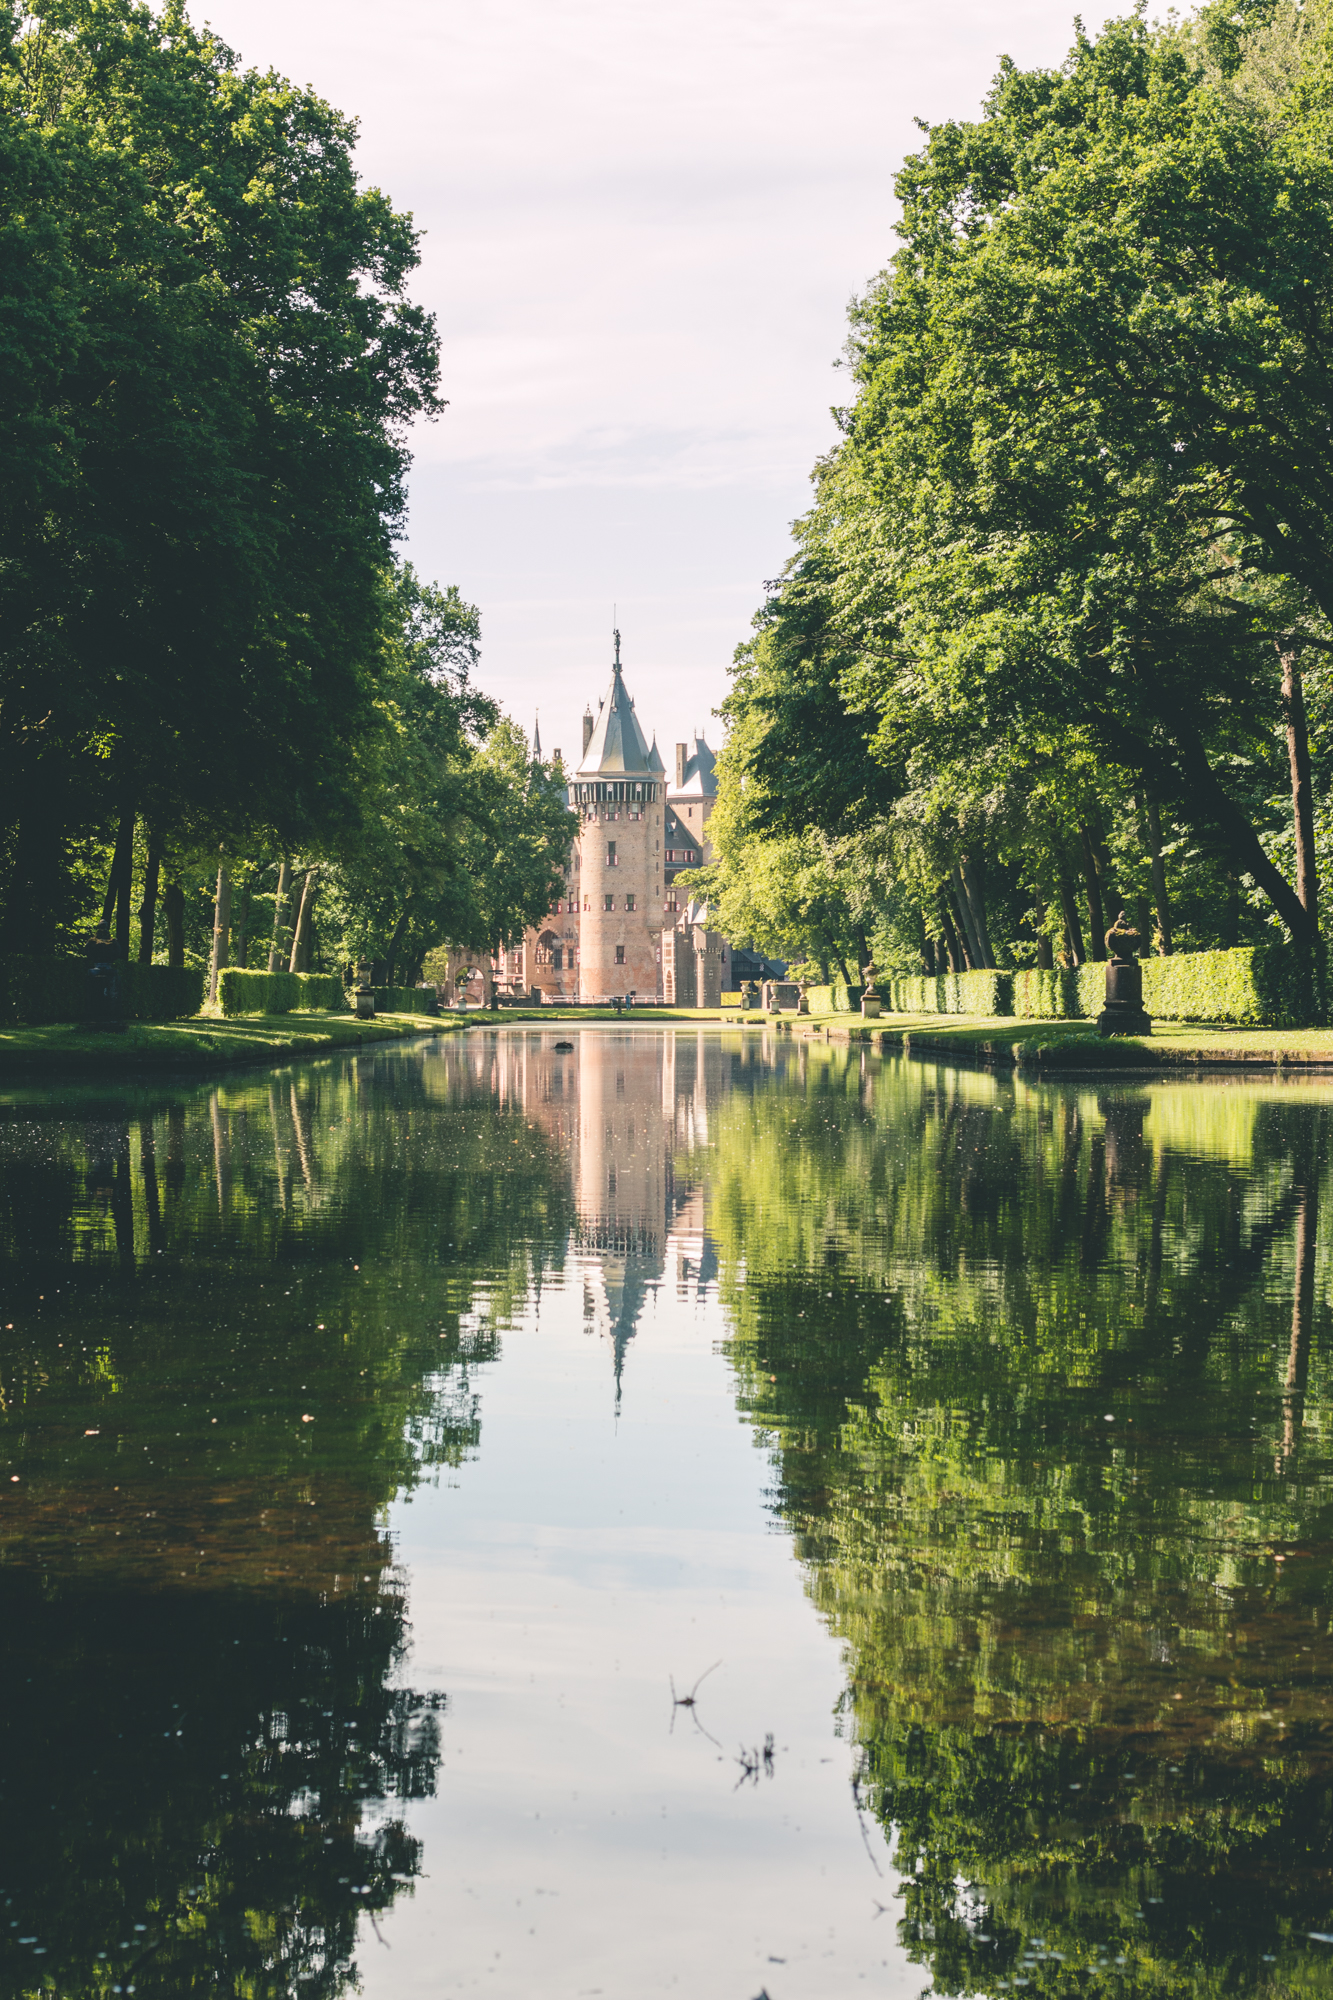 De Haar Castle, The Netherlands